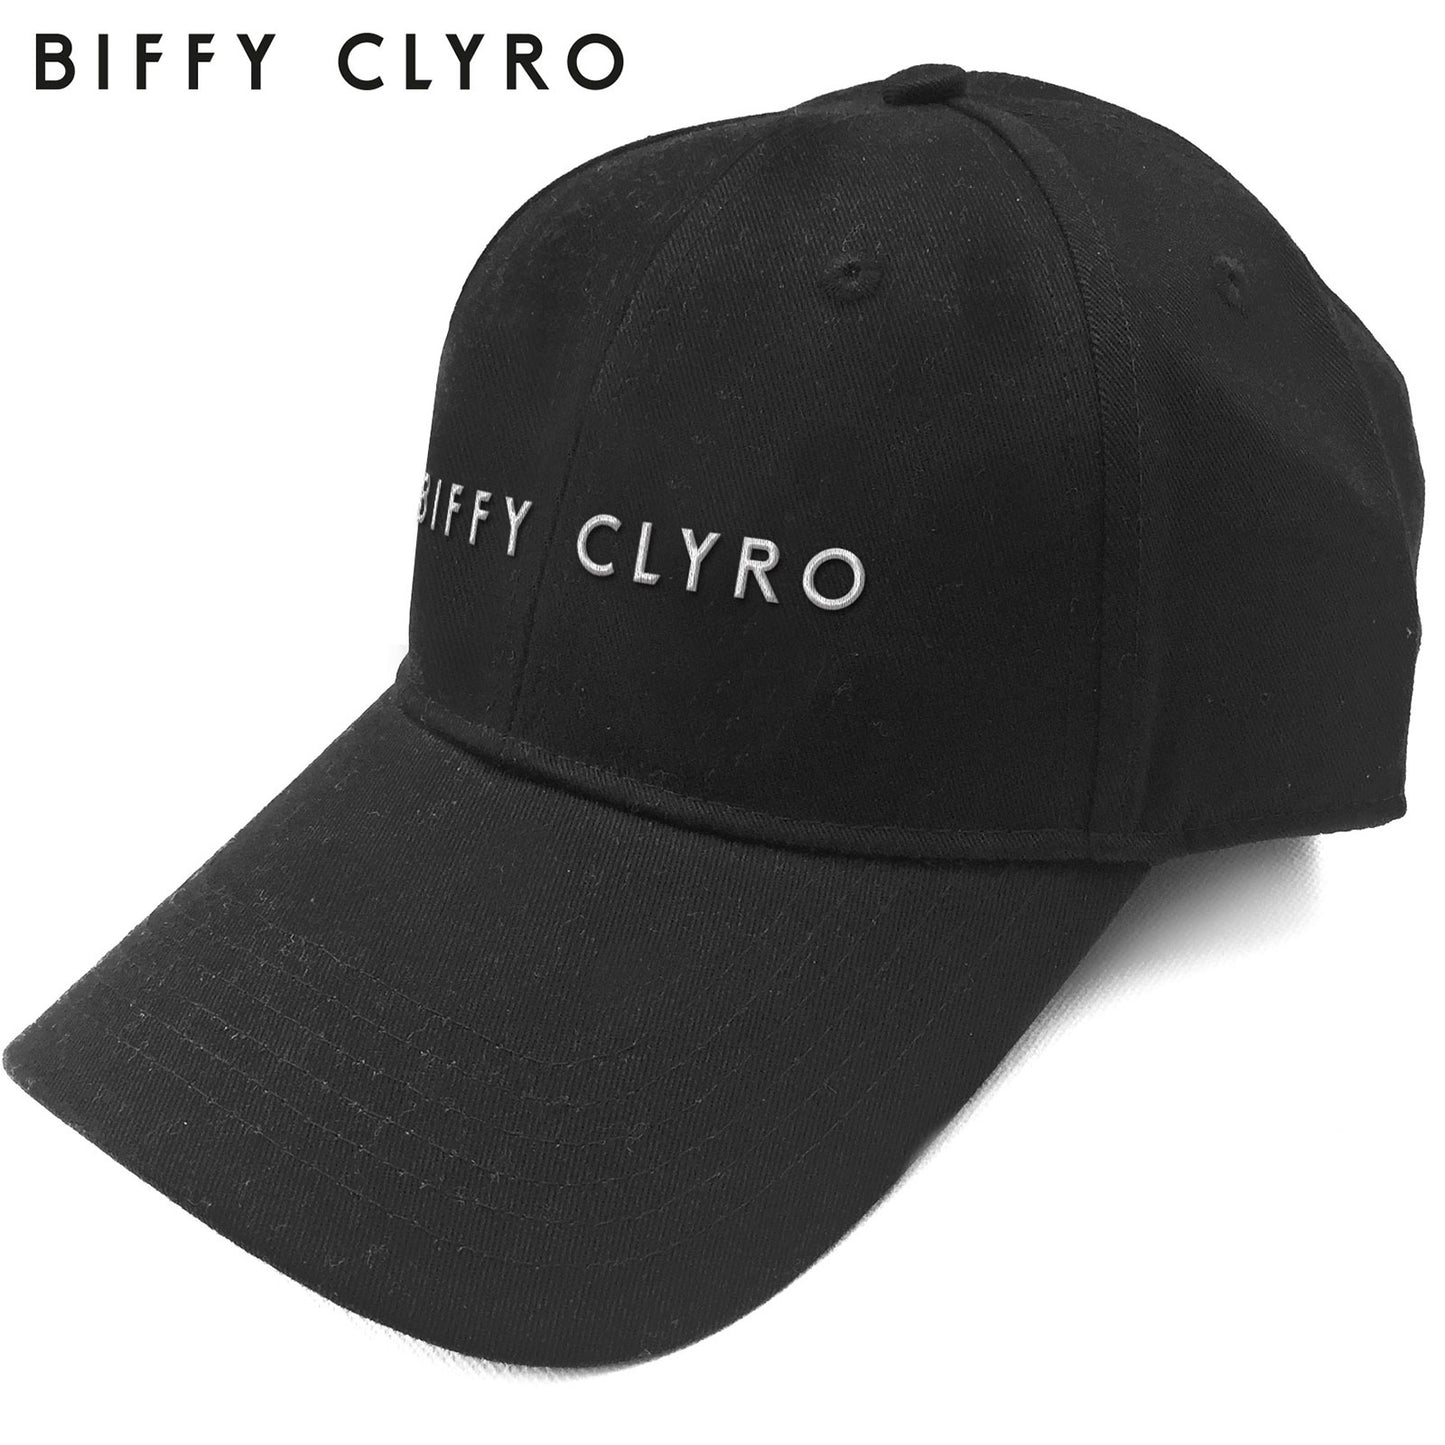 Biffy Clyro Baseball Cap: Logo